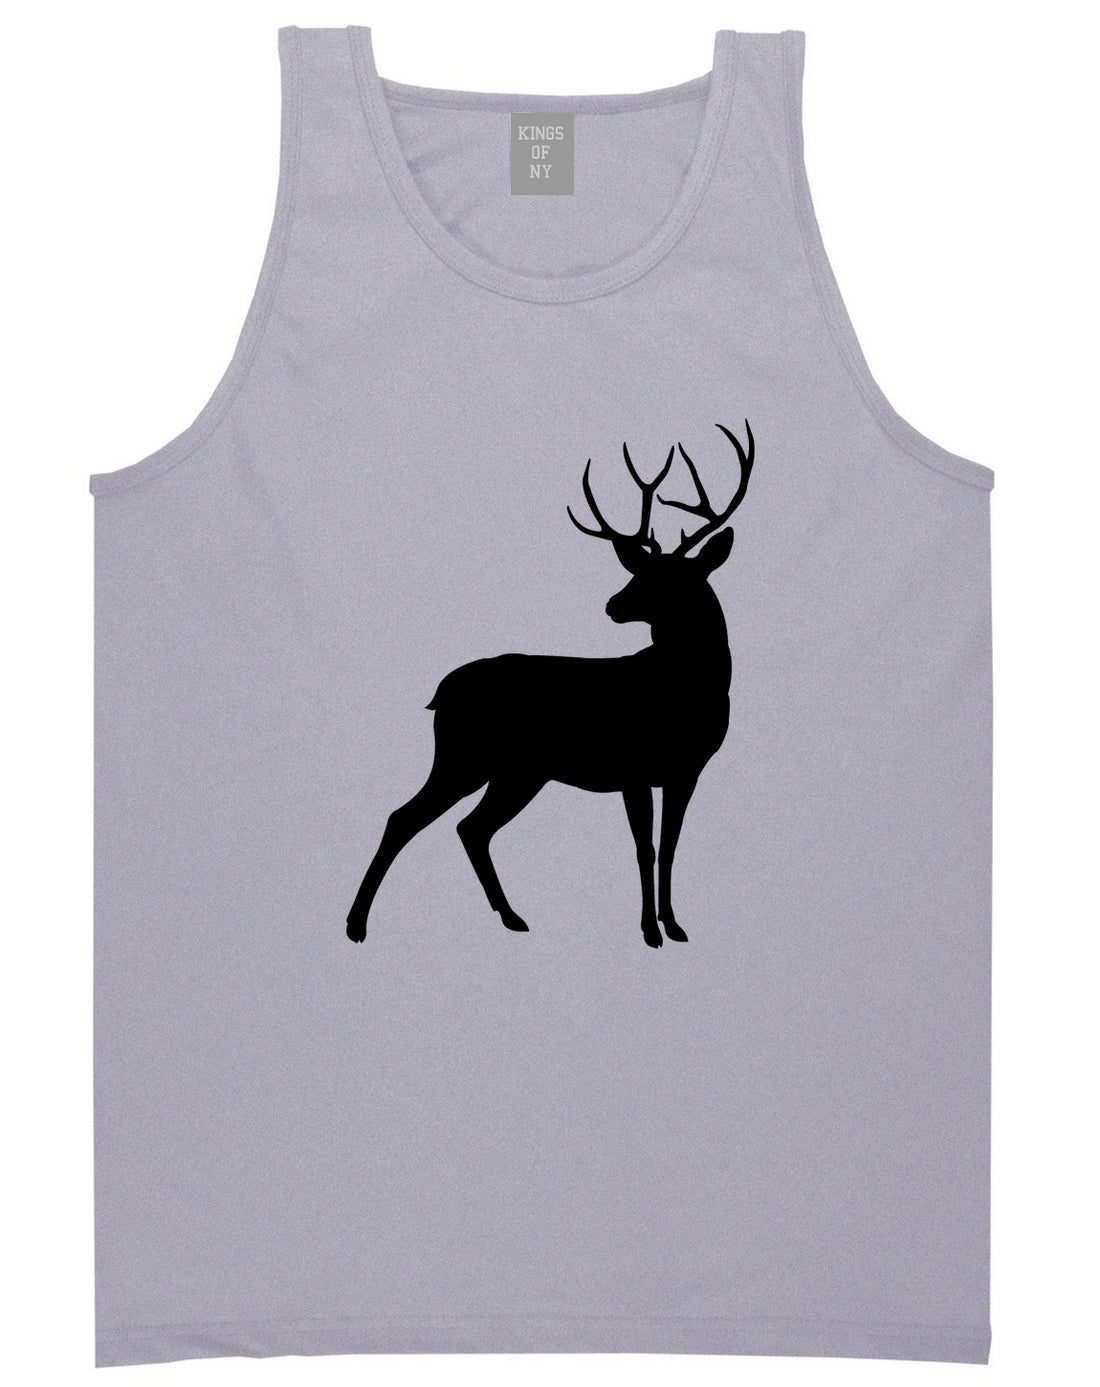 Deer_Hunting_Hunter Mens Grey Tank Top Shirt by Kings Of NY